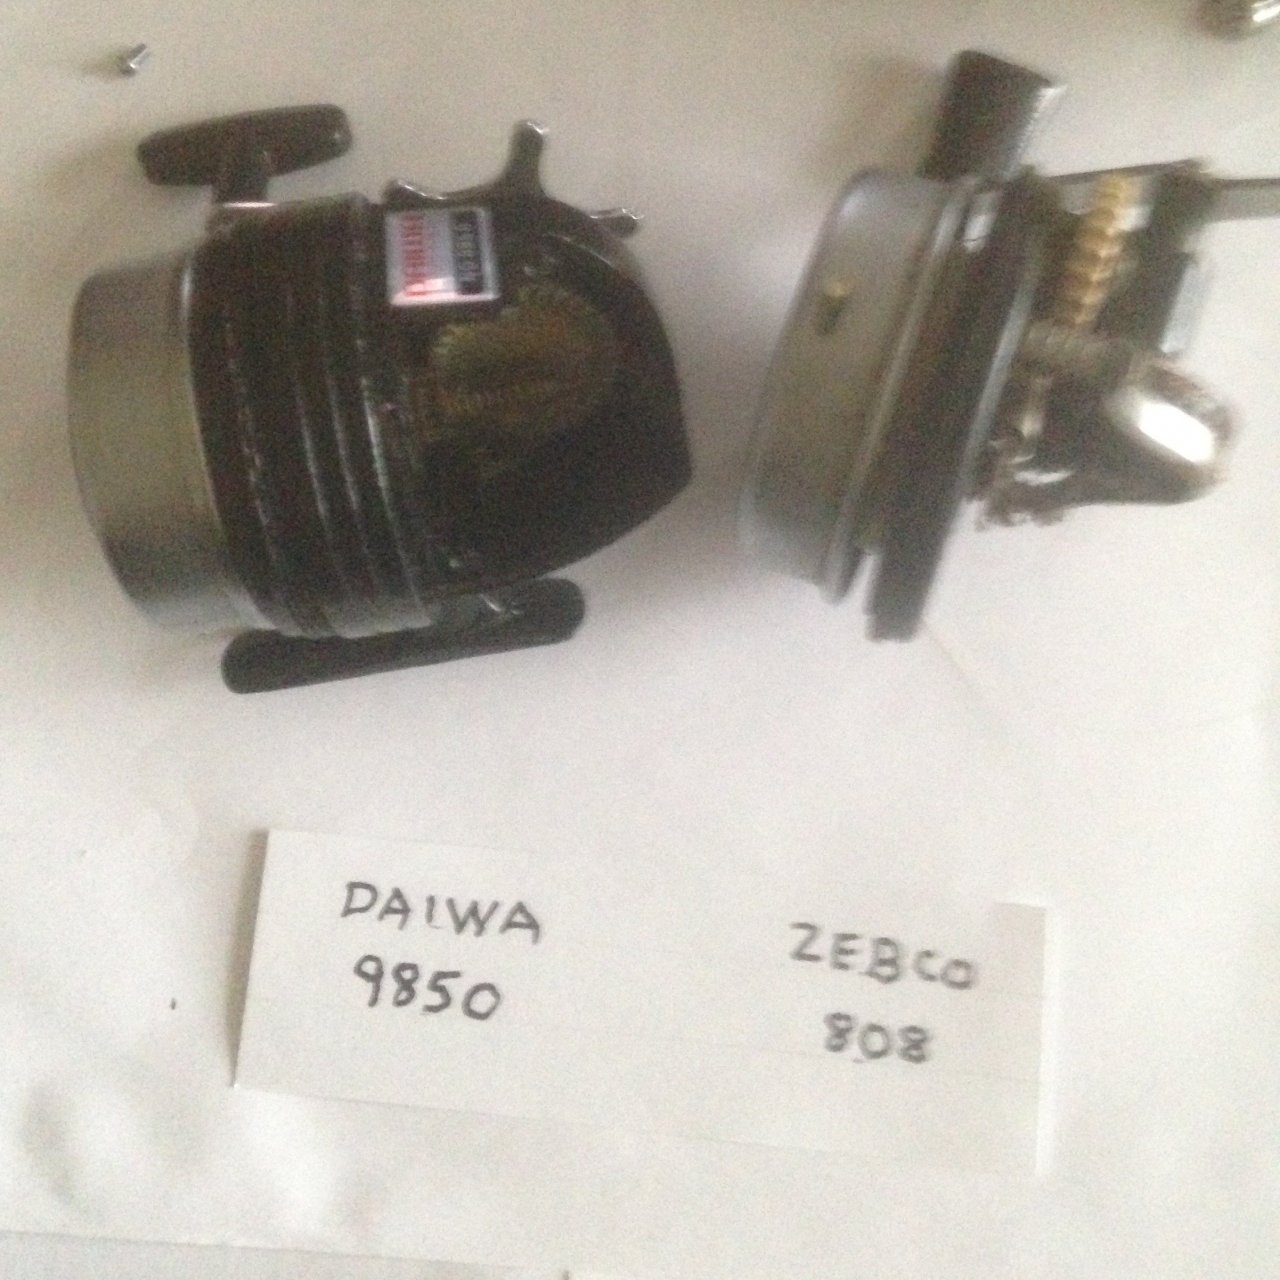 Vintage Daiwa And Zebco Spincast Reel Comparison